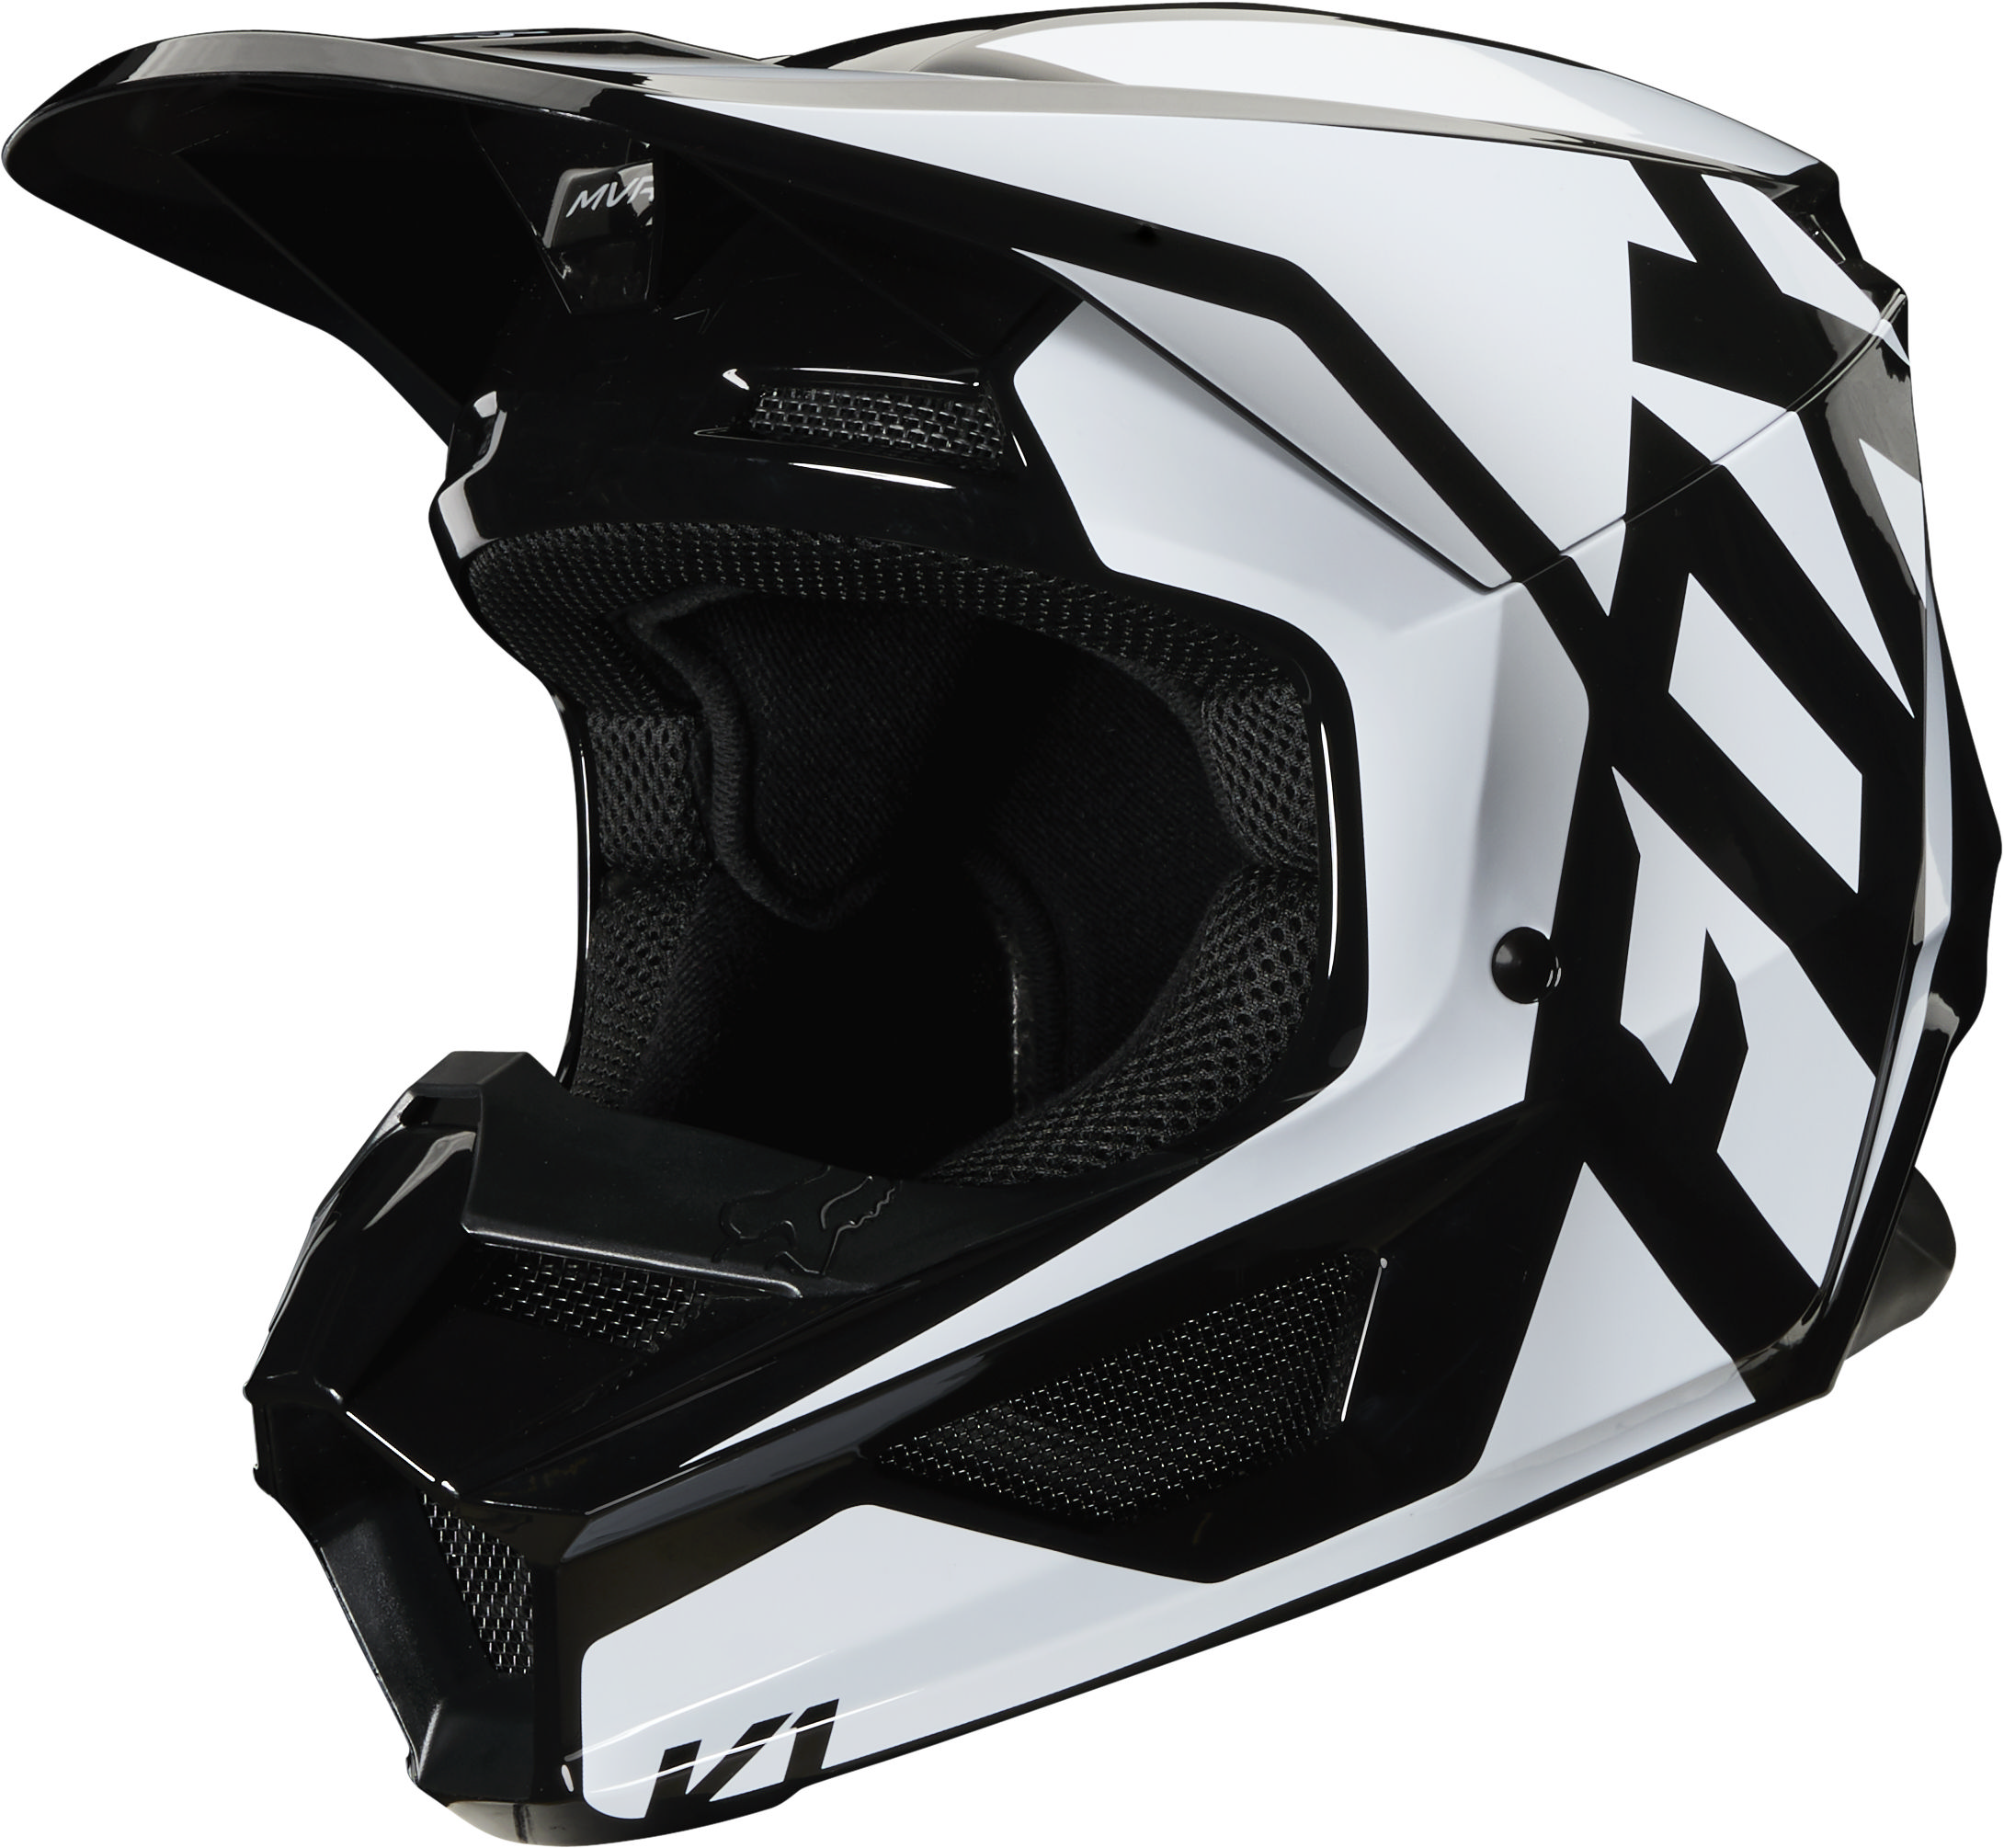 black and white dirt bike helmet